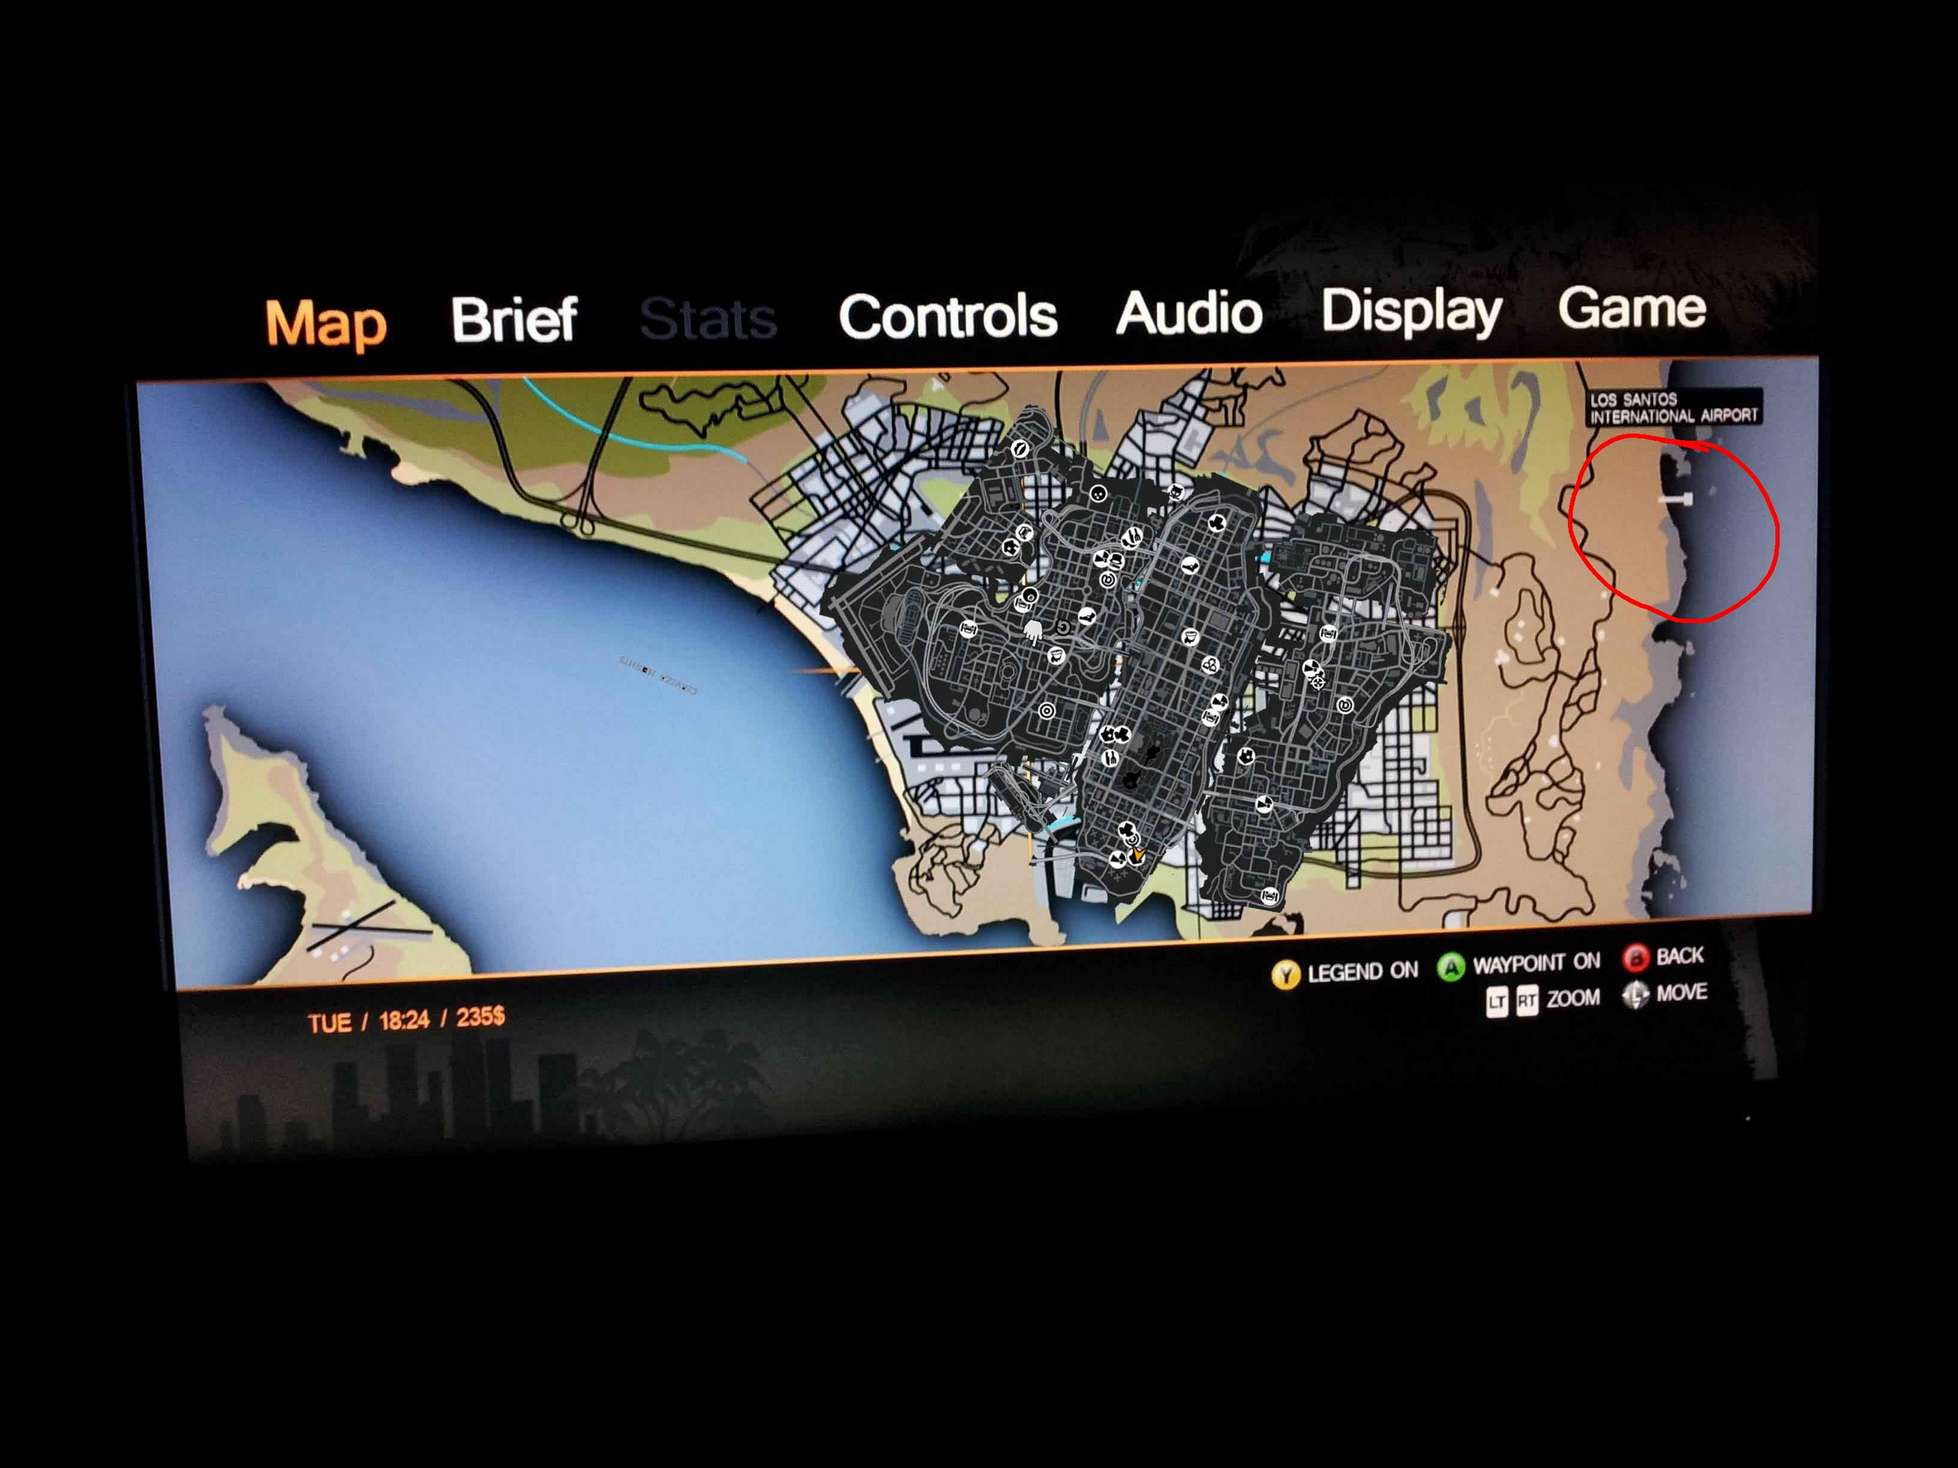 6平方英里)gta3(3平方英里)相关游戏地图范围:话说《xd5》的地图究竟